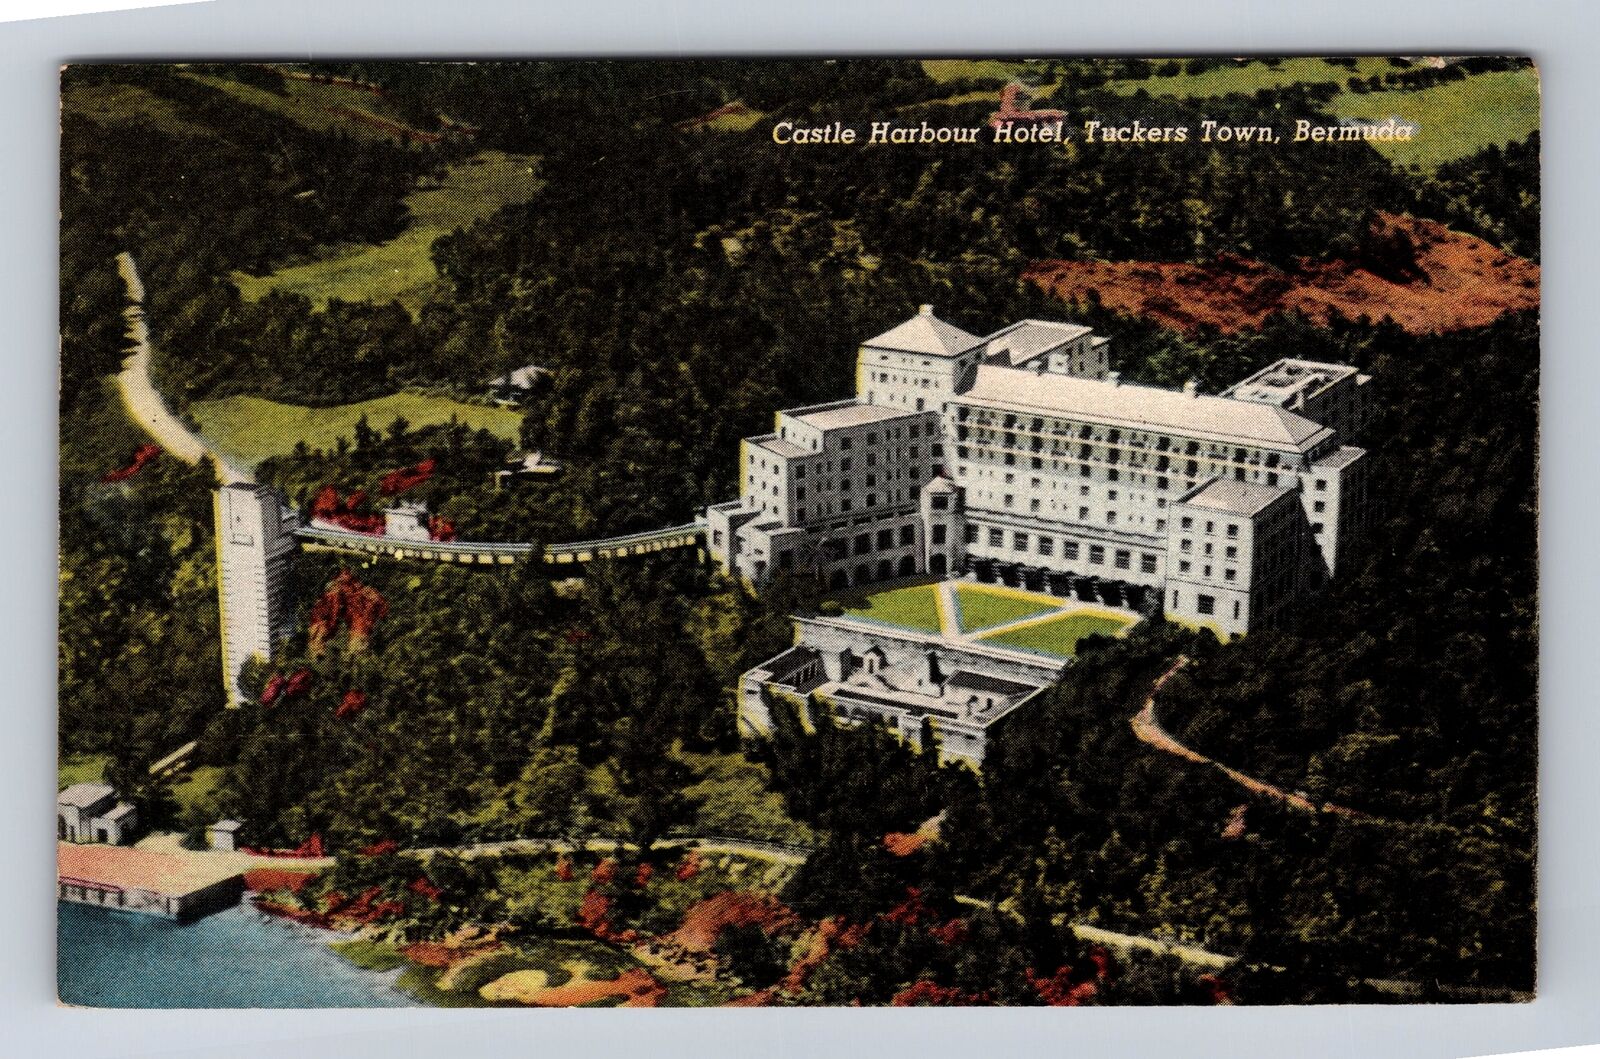 Tuckers Town-Bermuda, Castle Harbour Hotel, Advertising, Vintage Postcard